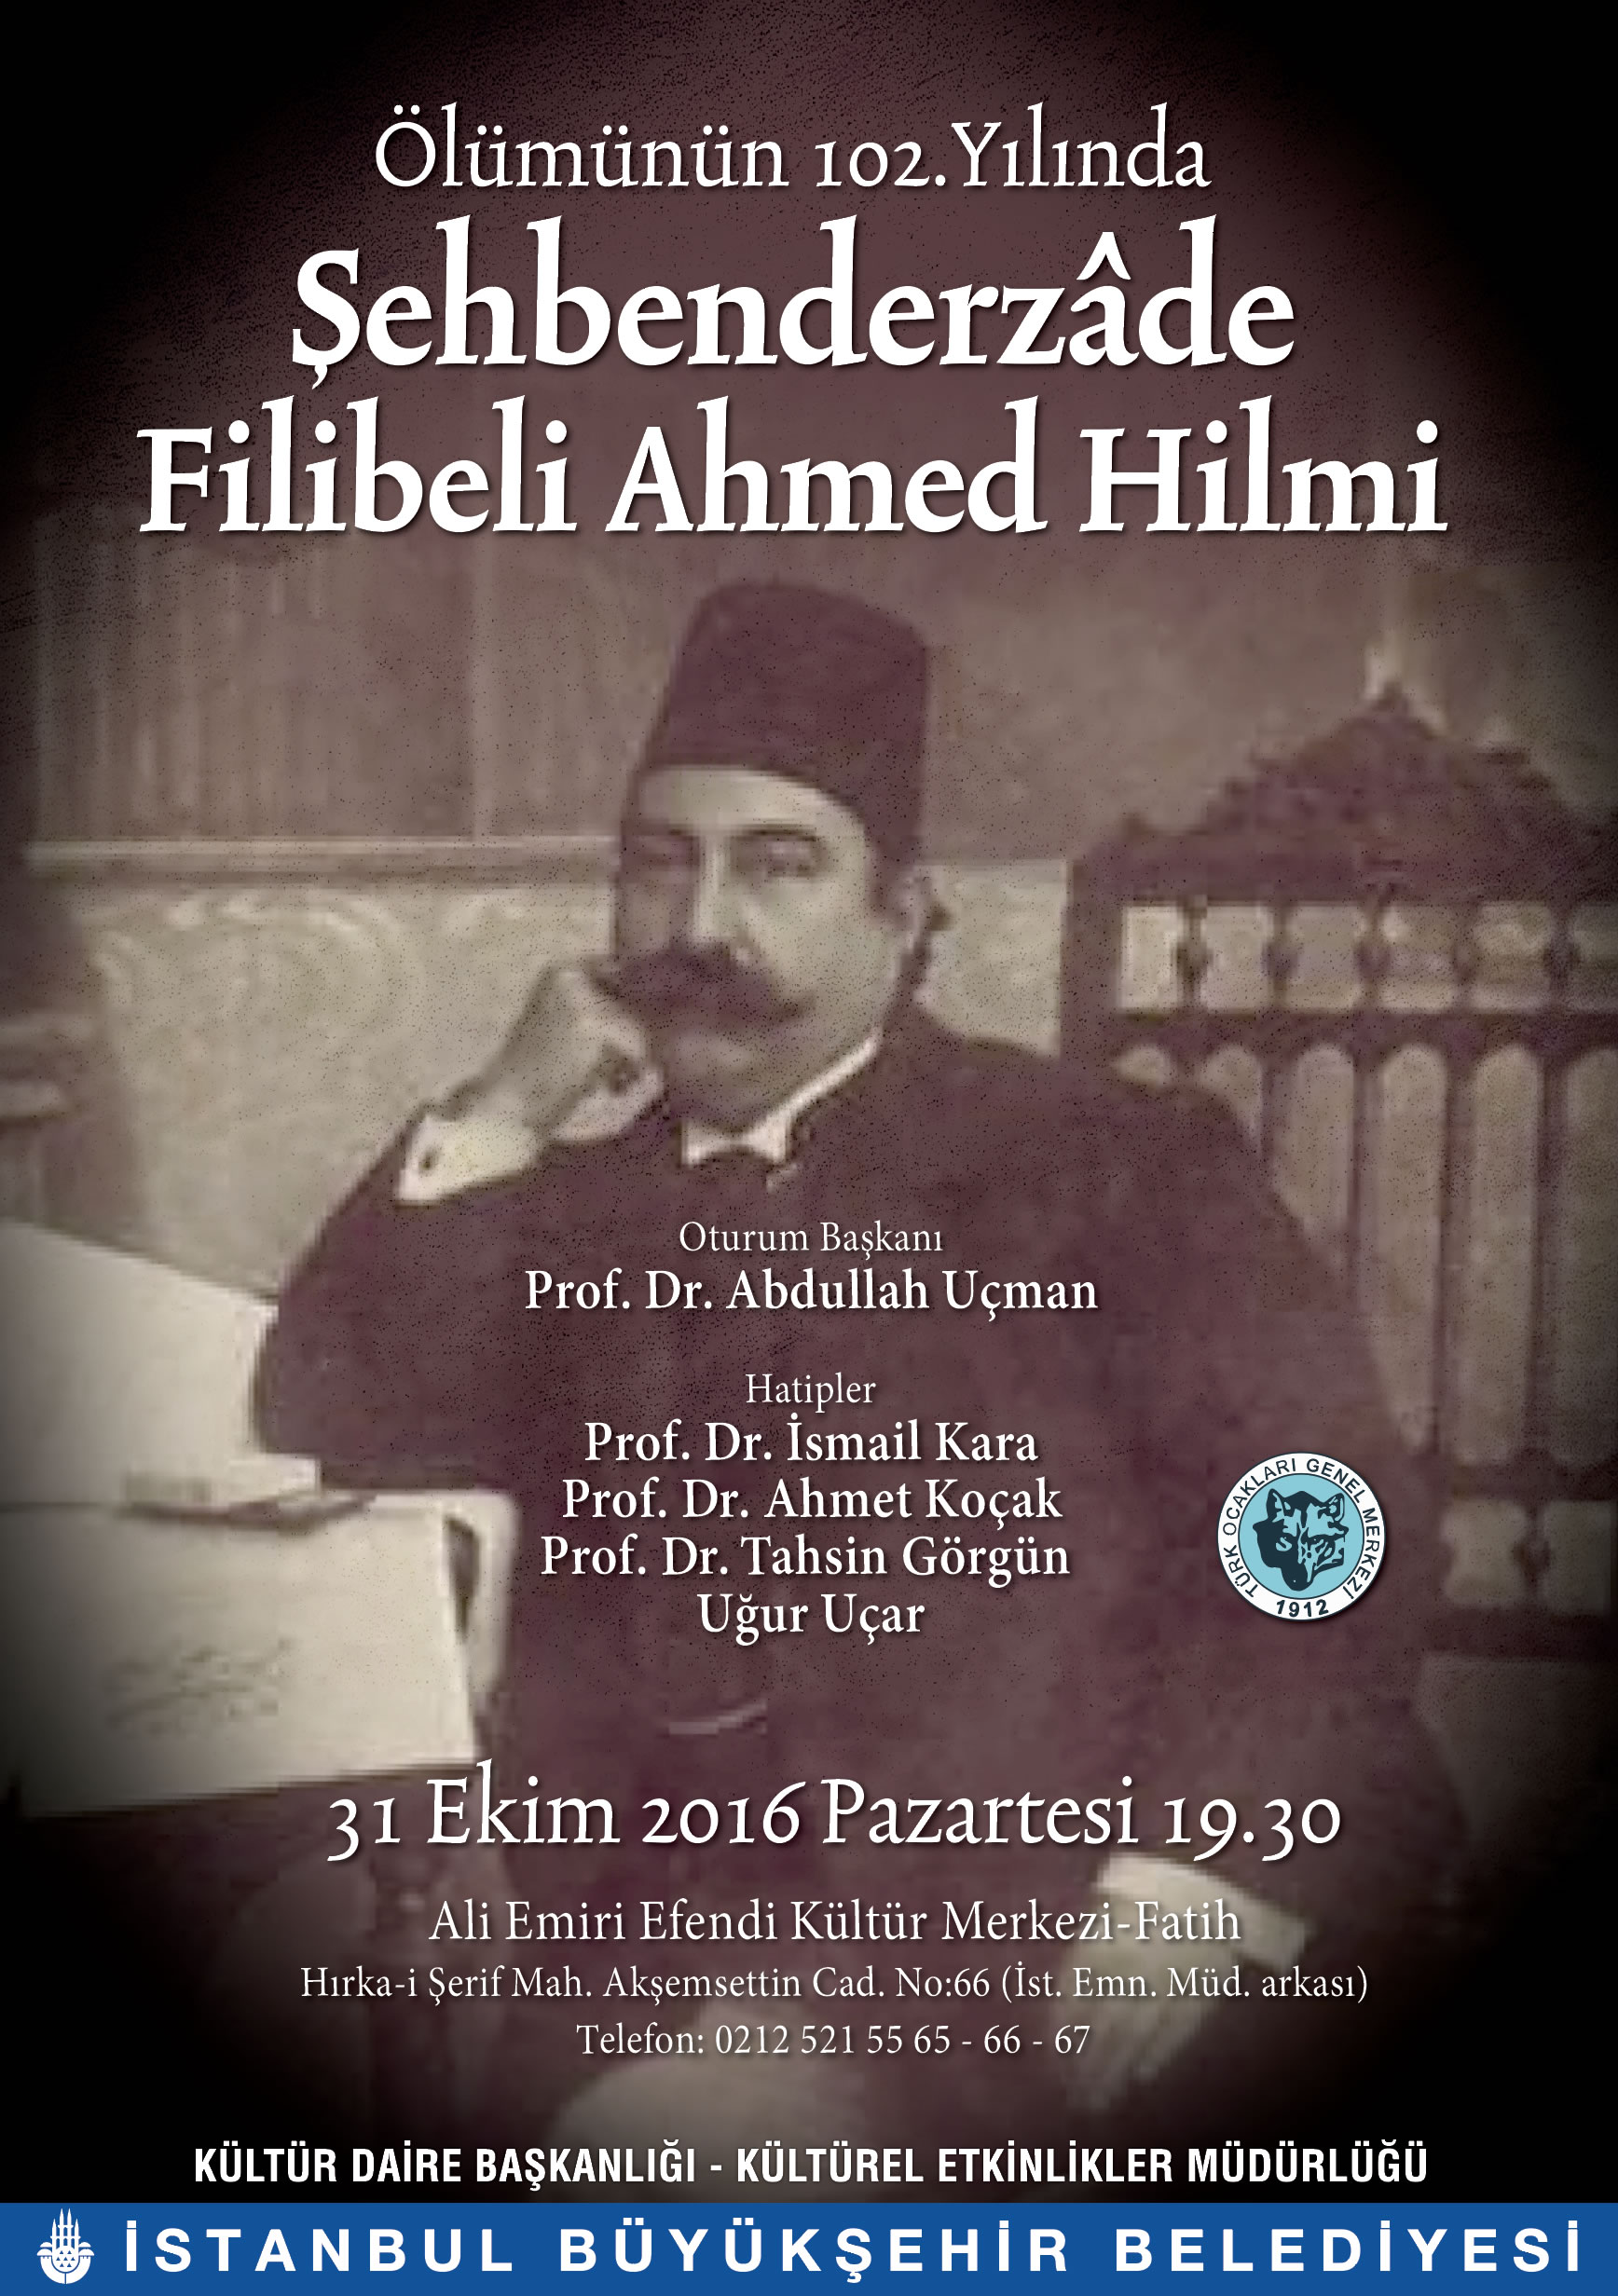 Ölümünün 102. Yılında Şehbendzade Filibeli Ahmed Hilmi